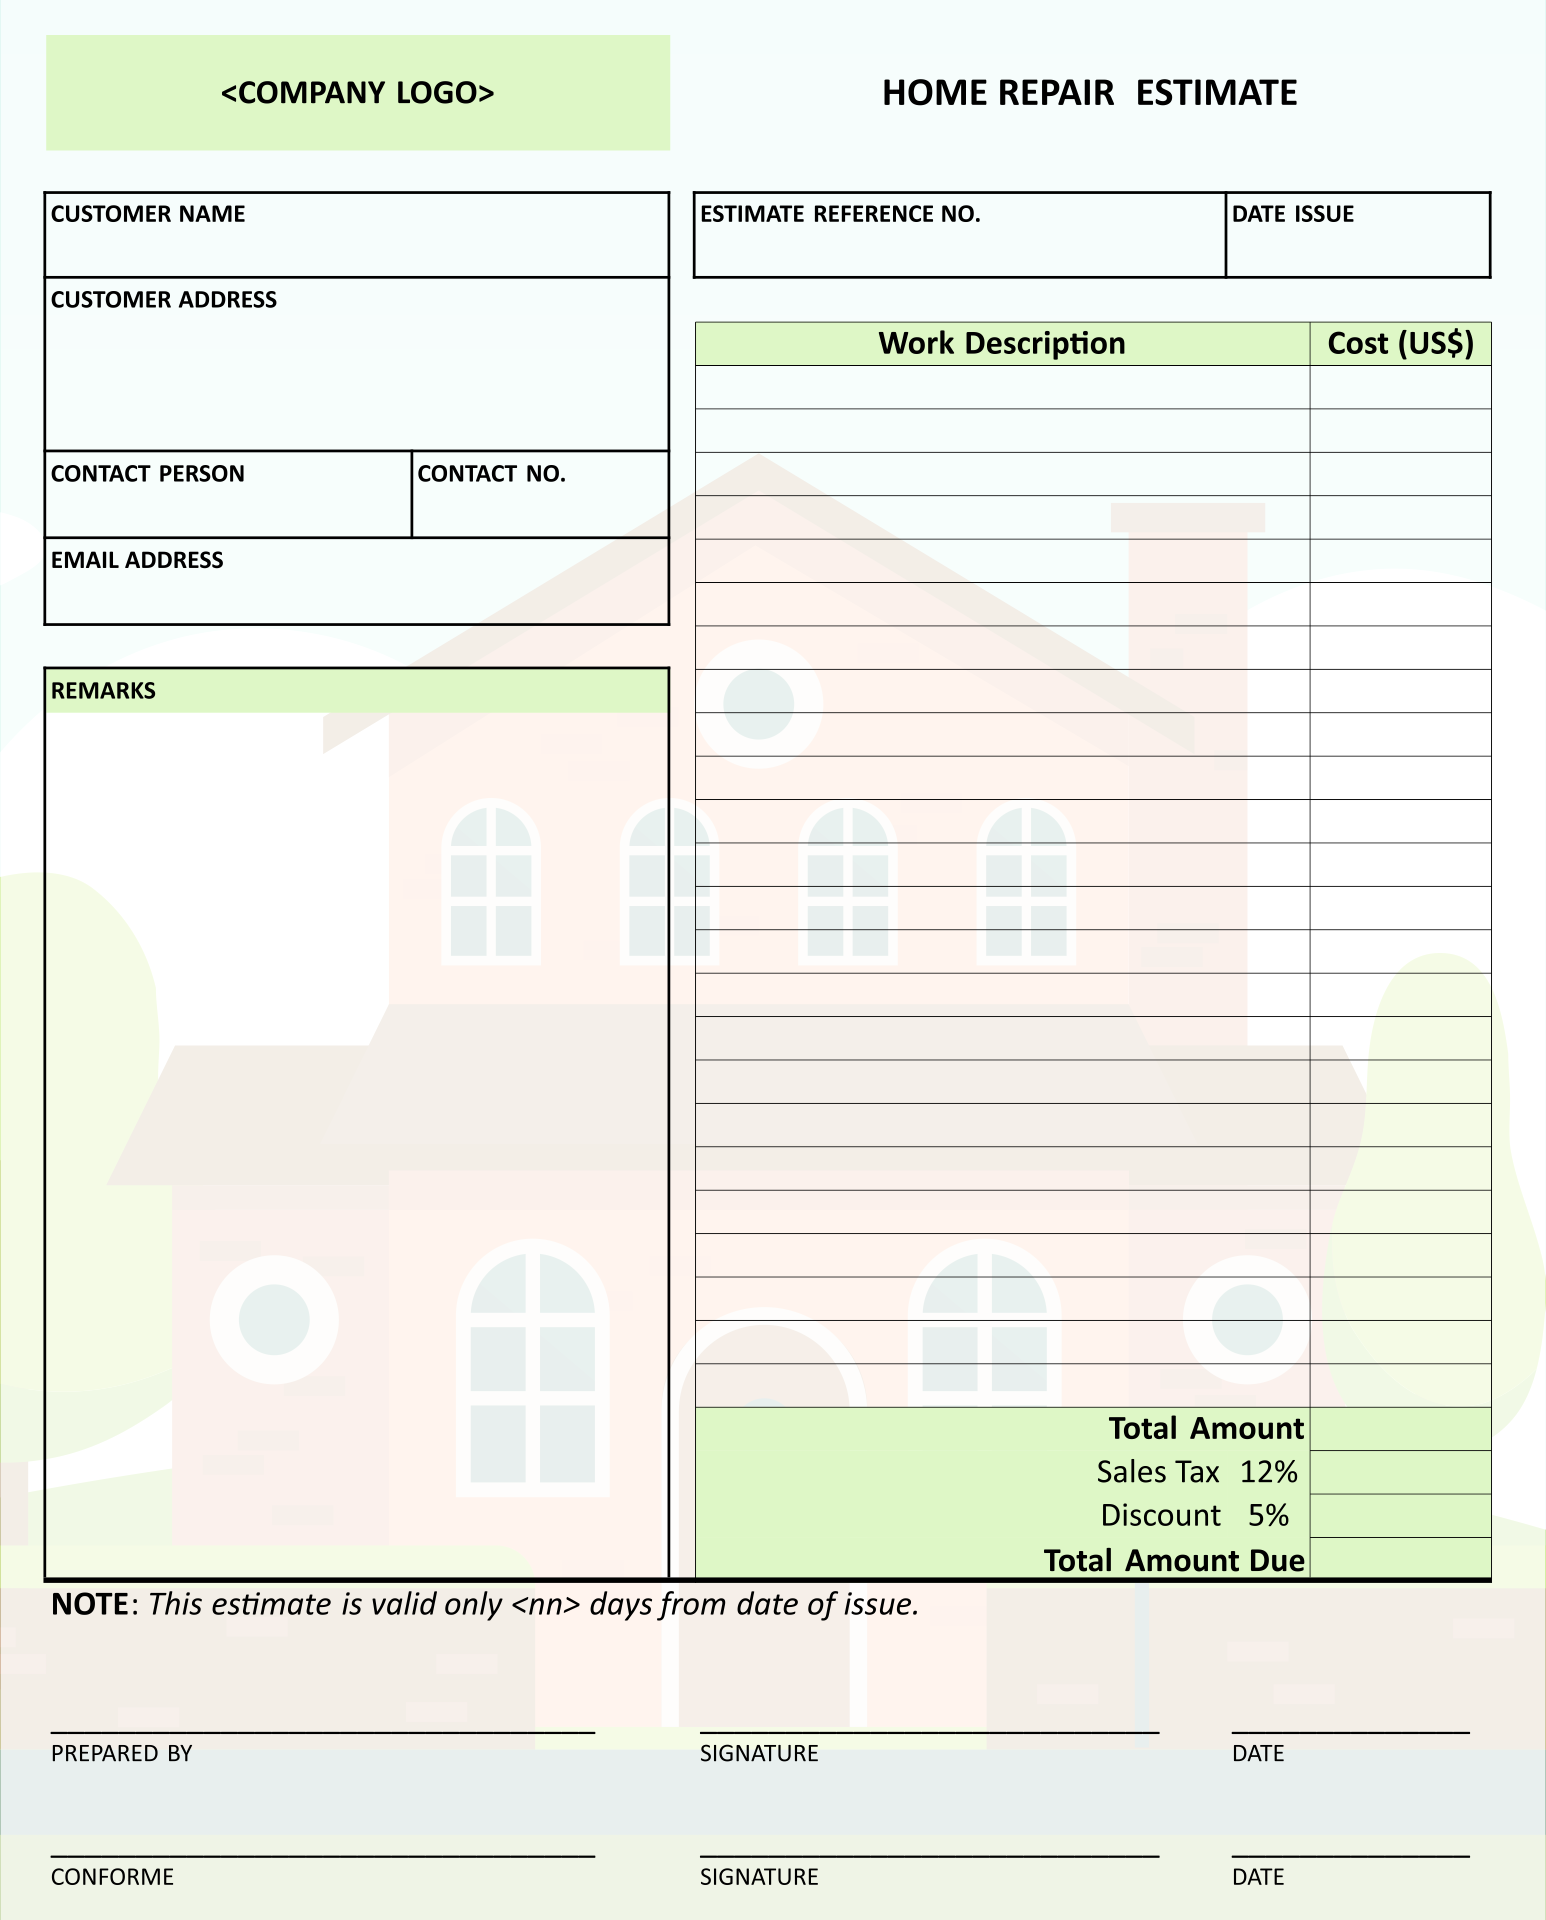 Home Repair Estimate Form